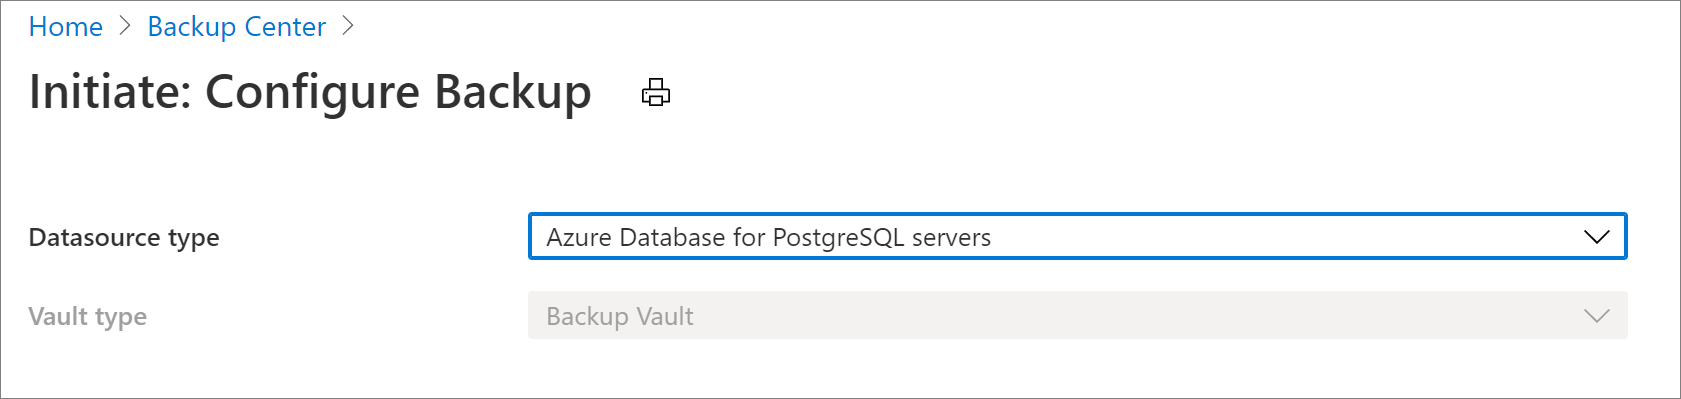 Selecione a fonte de dados para configurar o Banco de Dados do Azure para backup do PostgreSQL Server